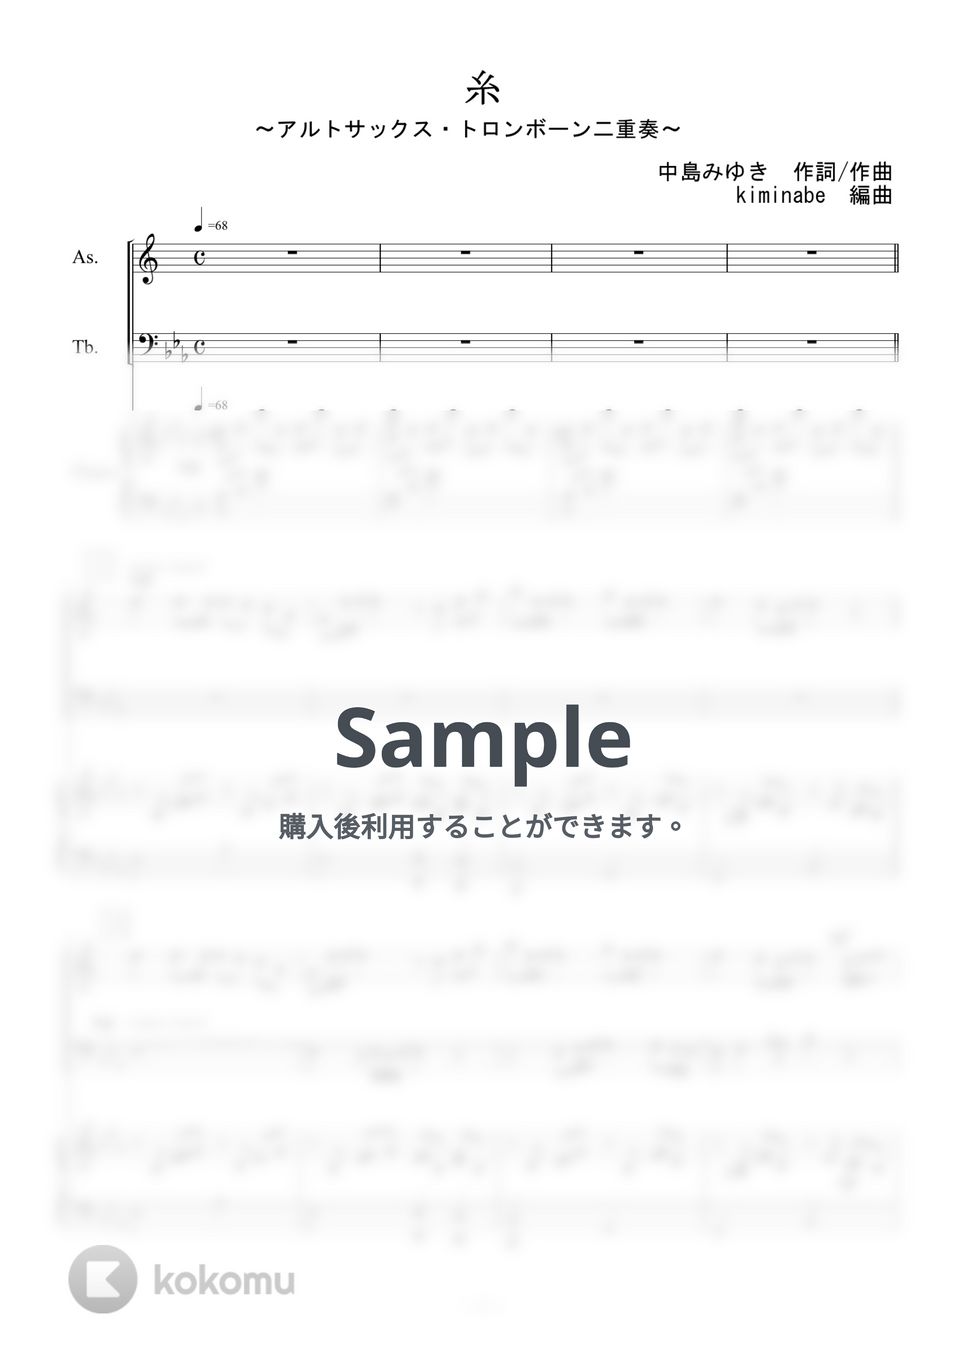 中島みゆき - 糸 (アルトサックス・トロンボーン二重奏) by kiminabe